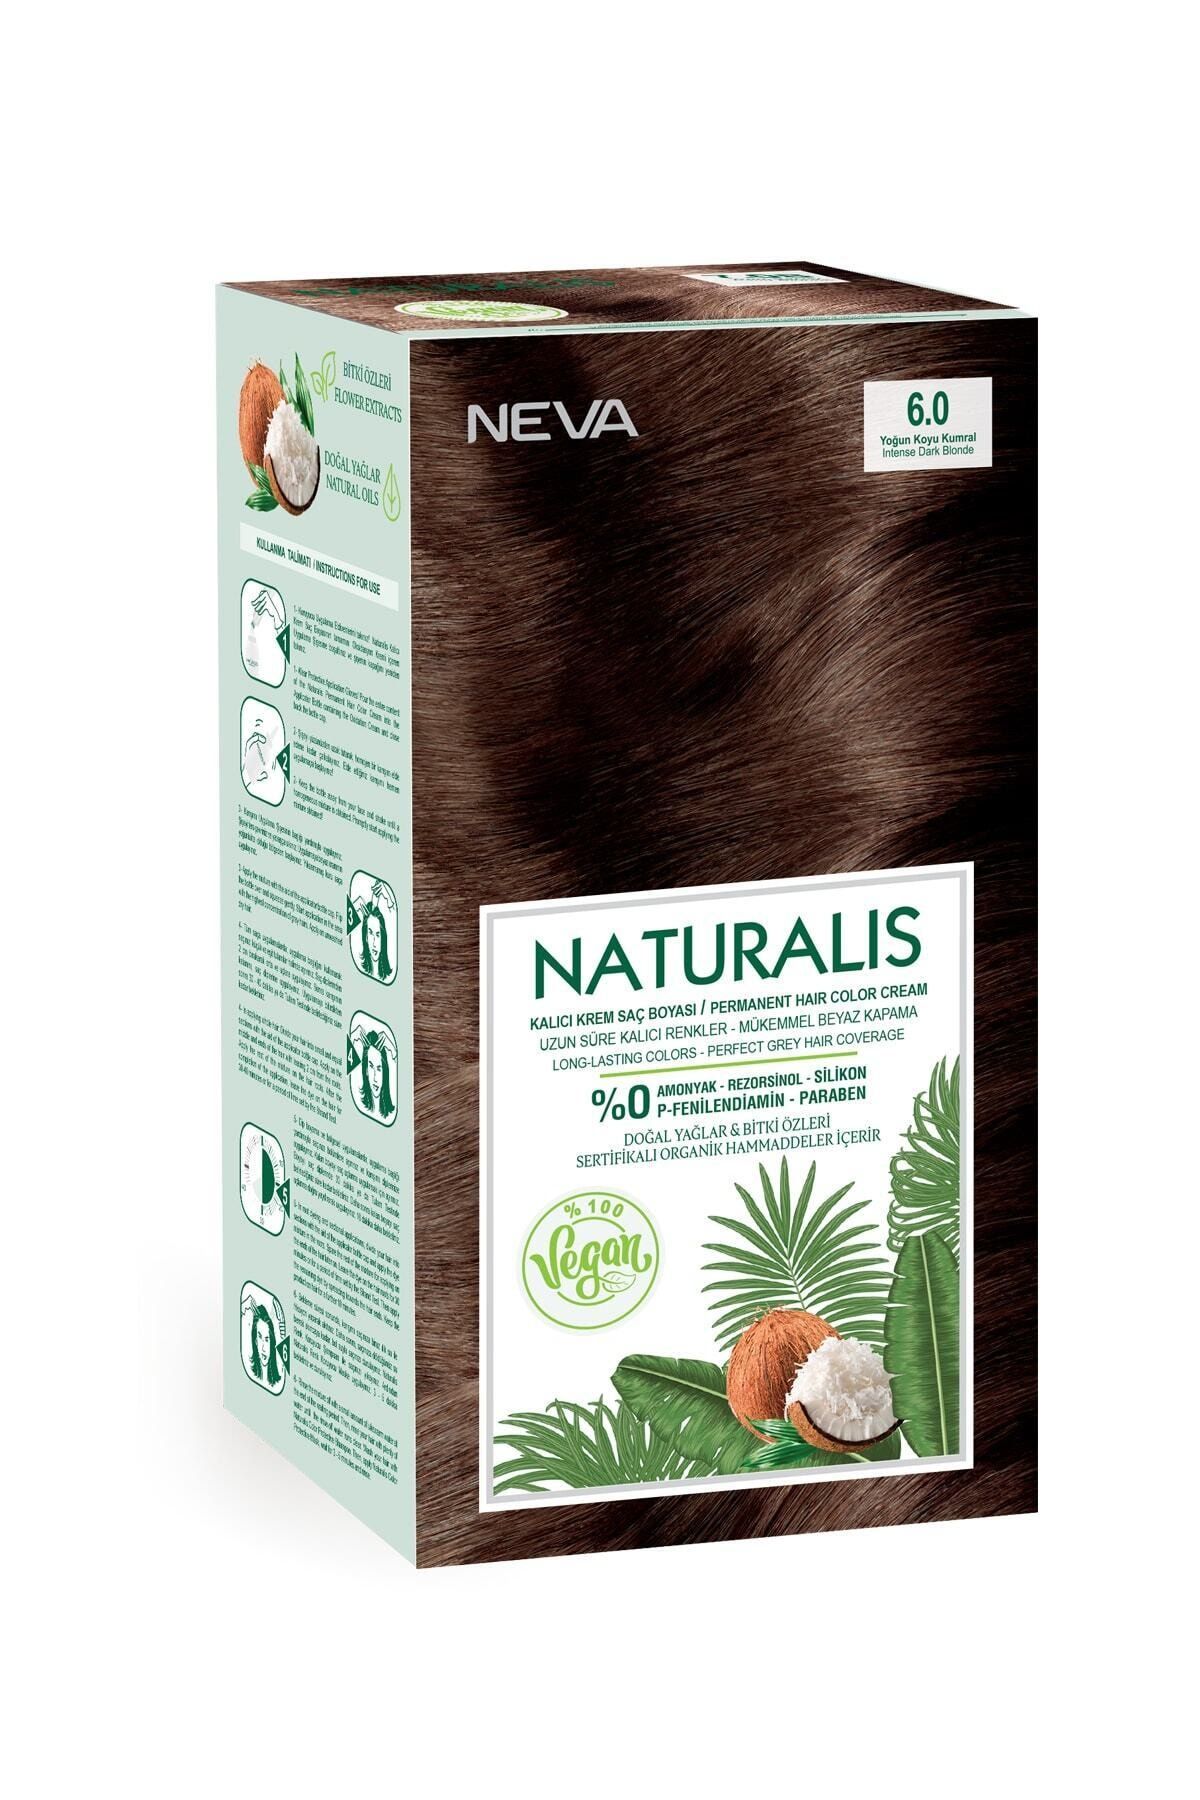 Neva Kozmetik Naturalis Sac Boyasi 6 0 Yogun Koyu Kumral Vegan Fiyati Yorumlari Trendyol